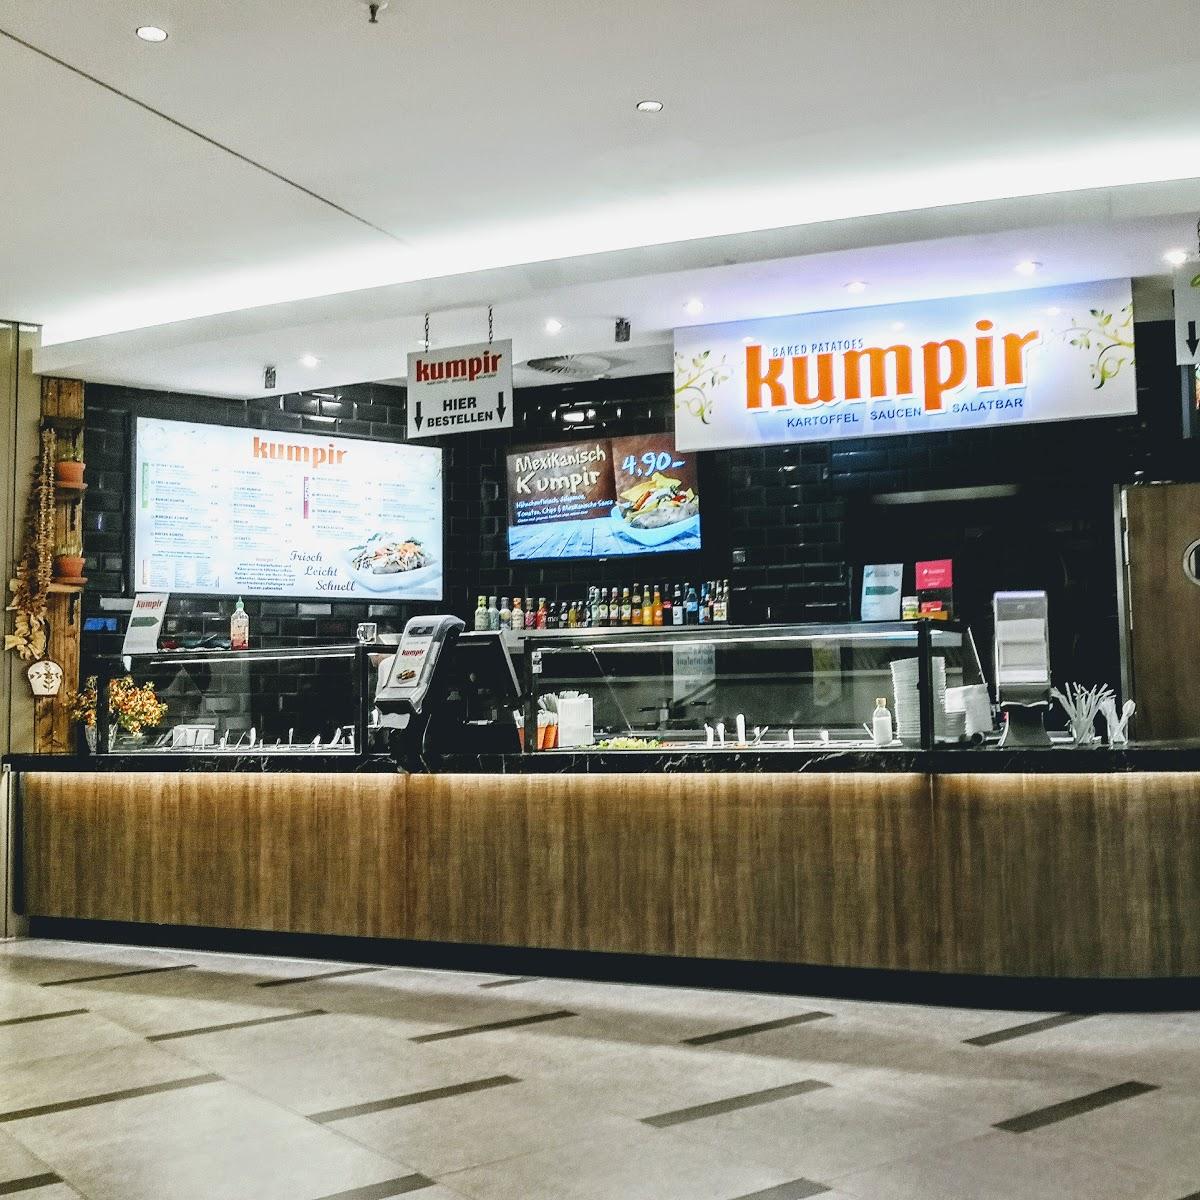 Restaurant "Kumpir König" in Hamburg